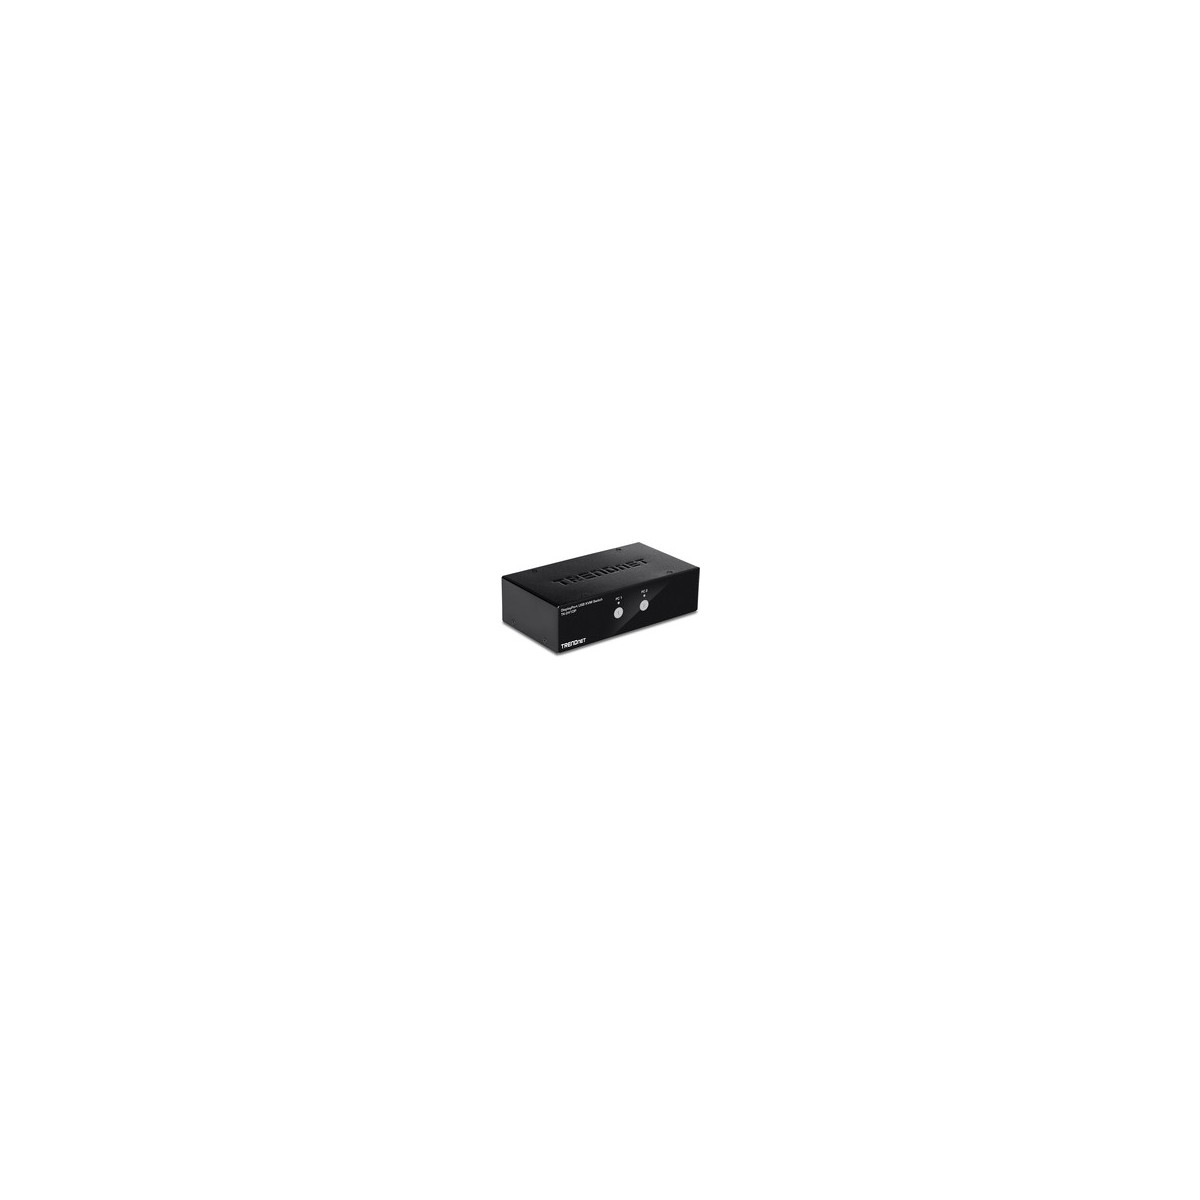 TRENDnet TK-241DP - 3840 x 2160 pixels - 4K Ultra HD - Black